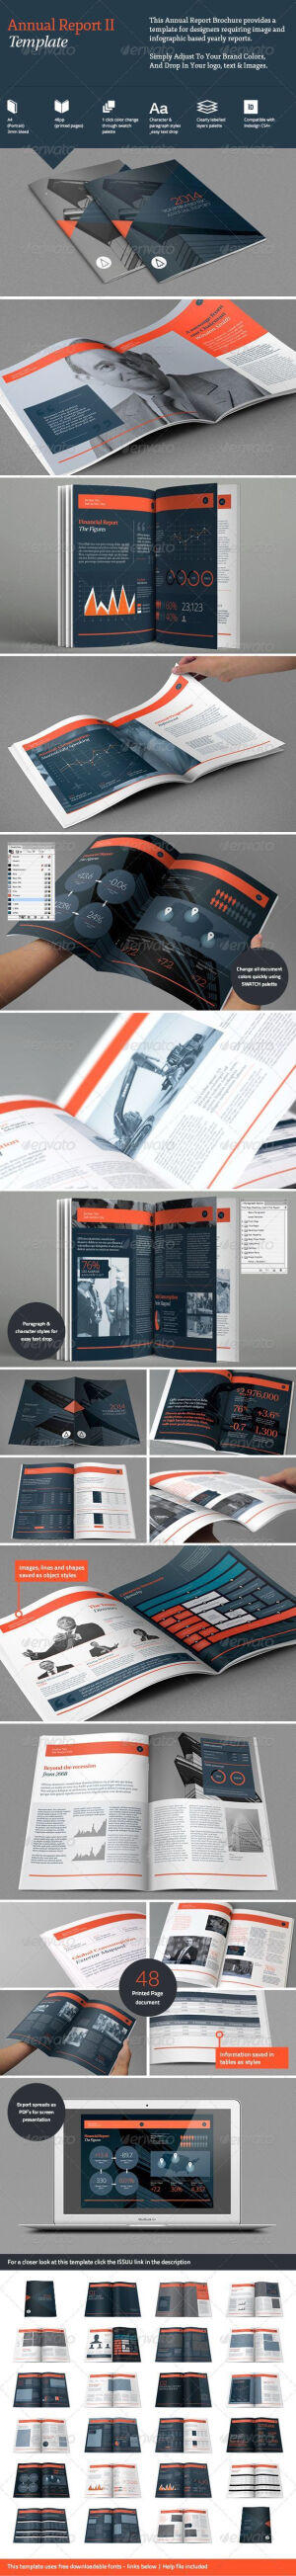 画册 杂志 图书 版式 平面设计